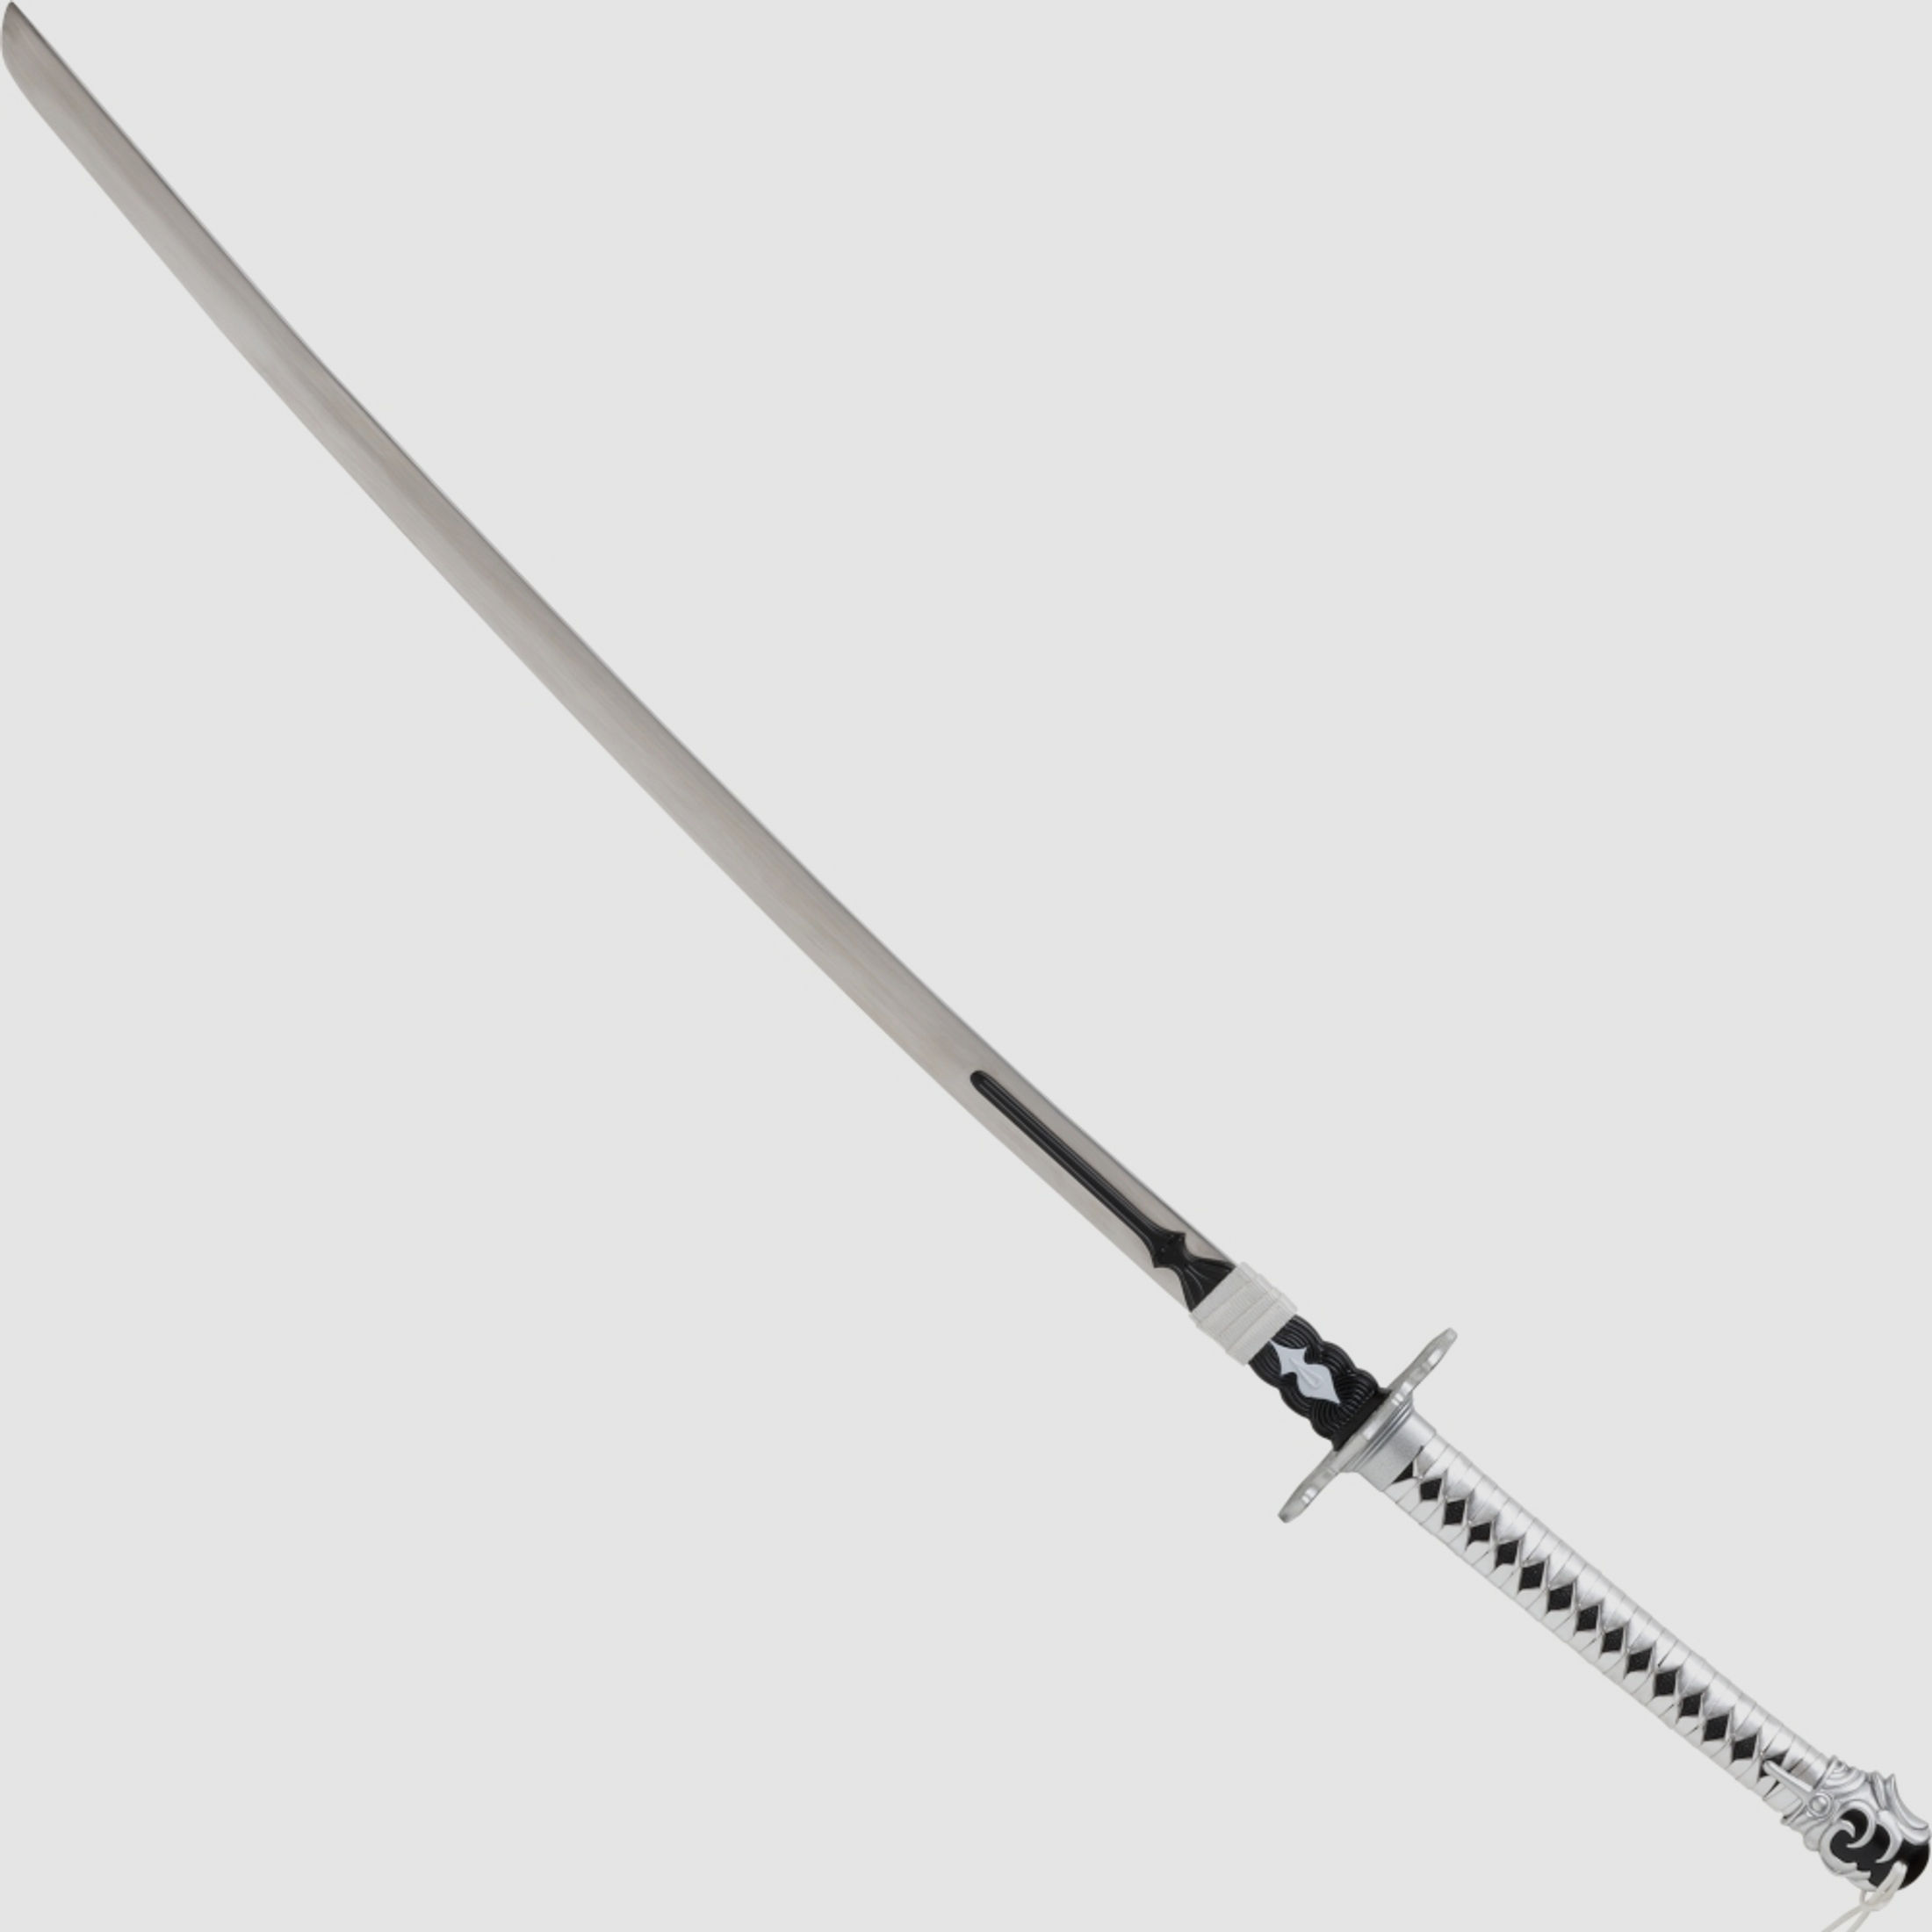 Nier Automata Katana Samurai Schwert Game YoRHa No.2 Type B Sword